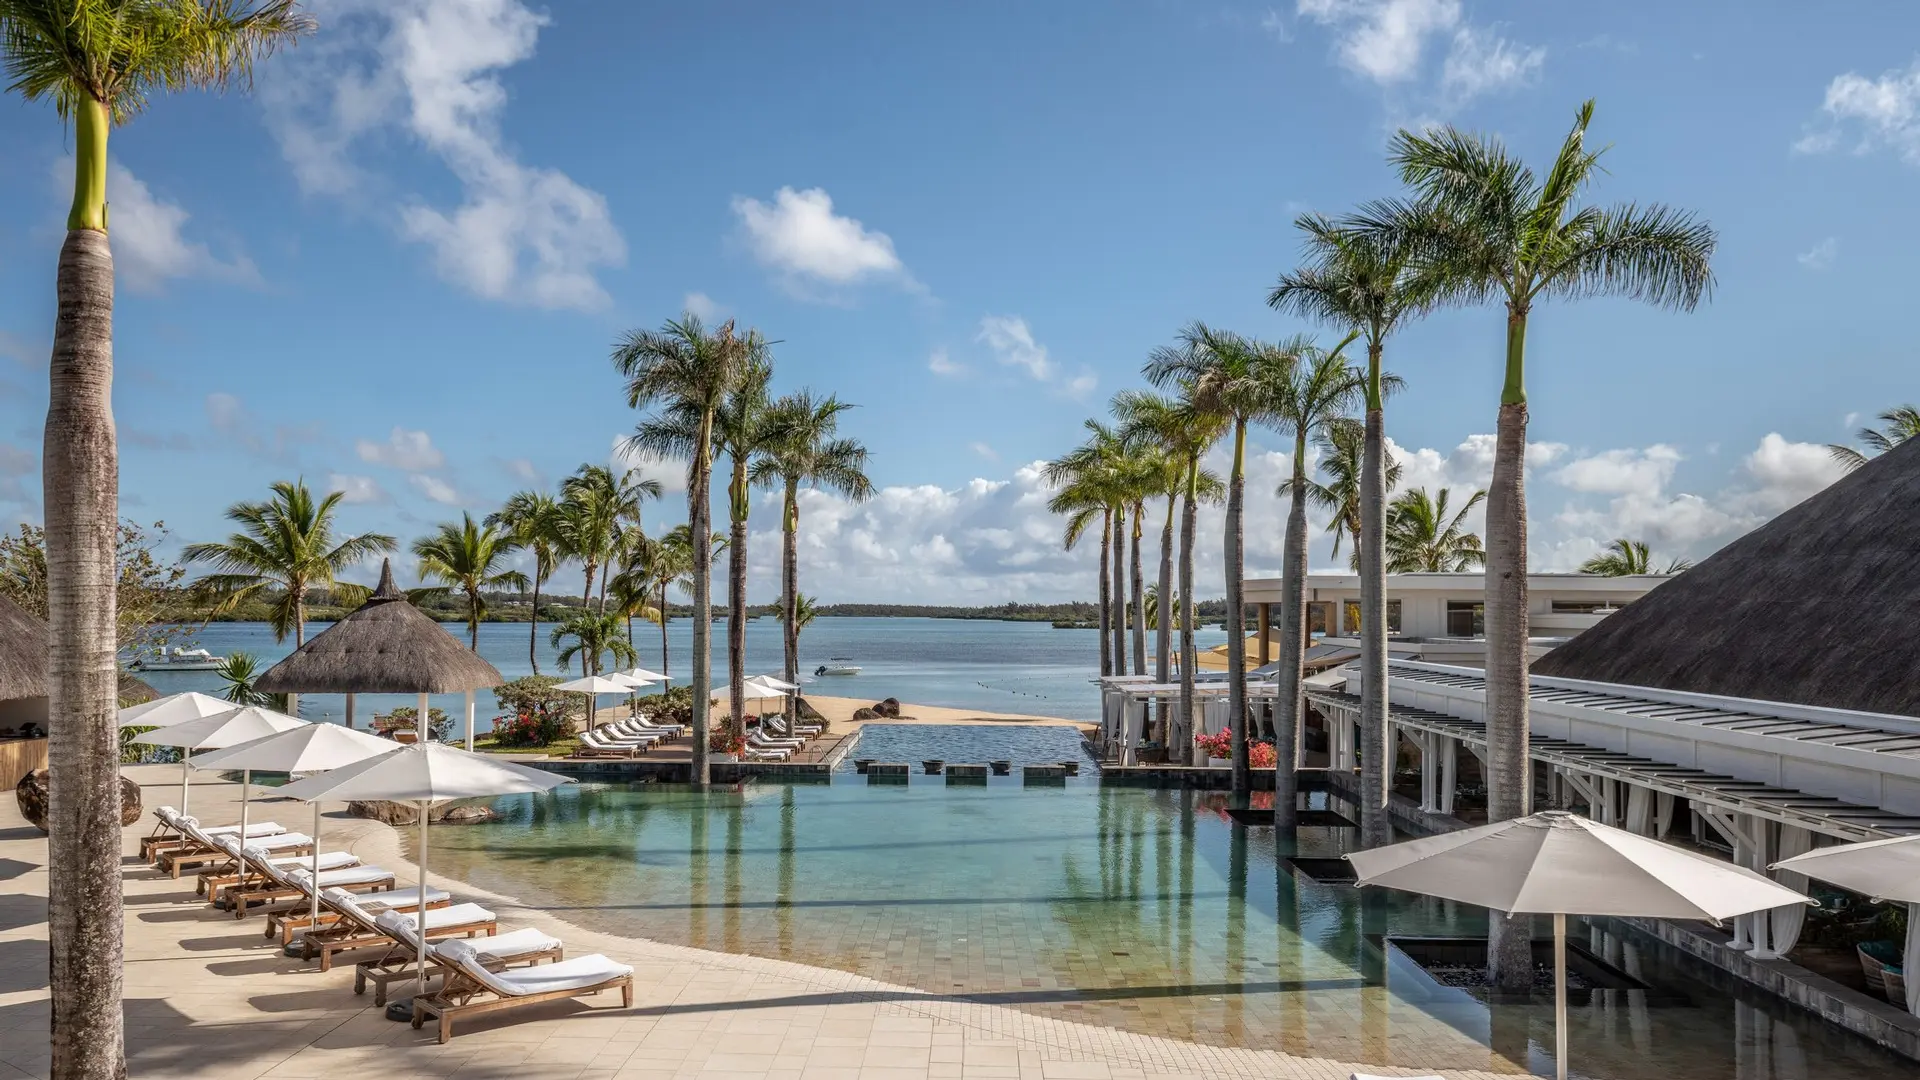 Hotel review Service & Facilities' - Four Seasons Resort Mauritius at Anahita - 4